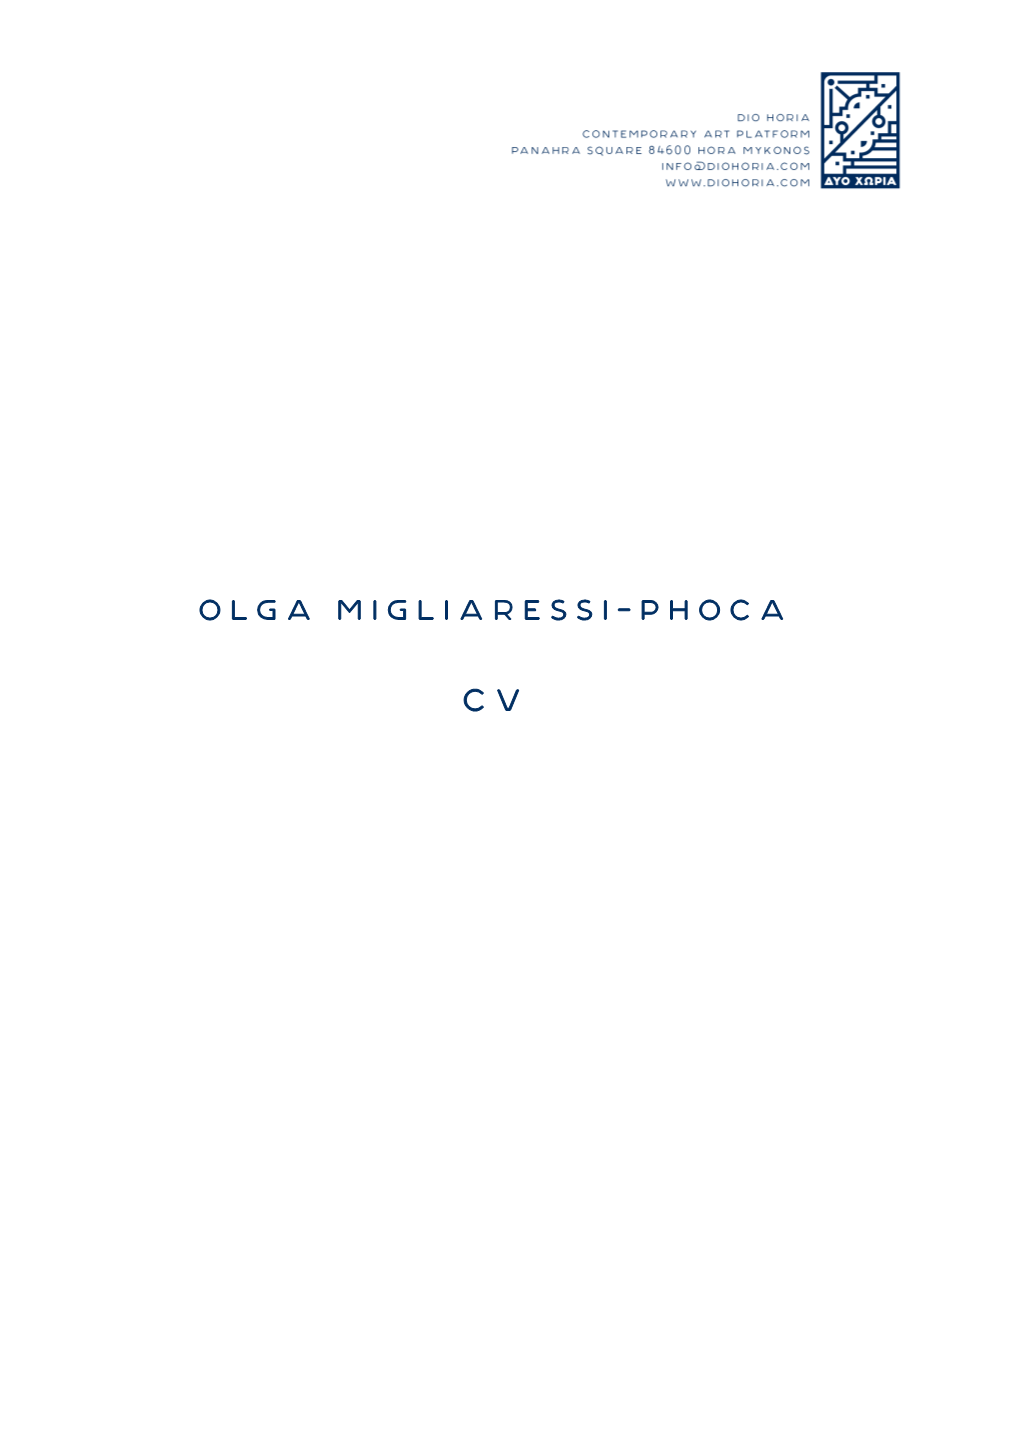 Olga Migliaressi-Phoca